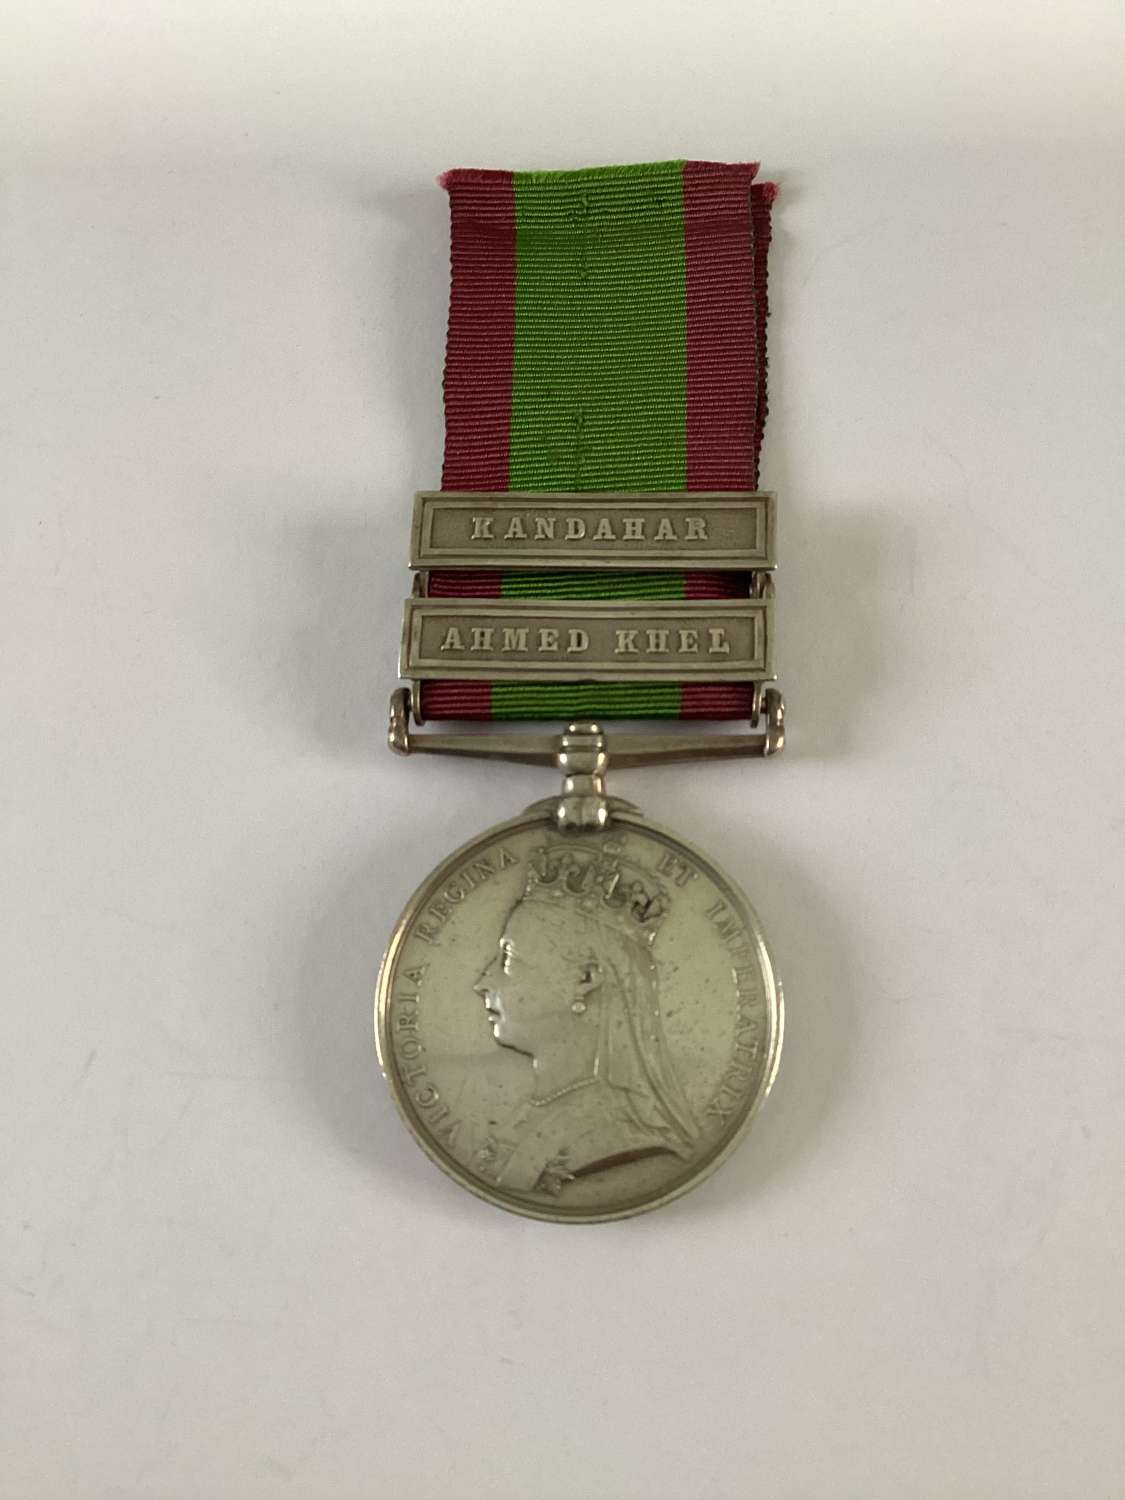 Afghanistan Medal 1881 with bars Ahmed Khel, and Kandahar